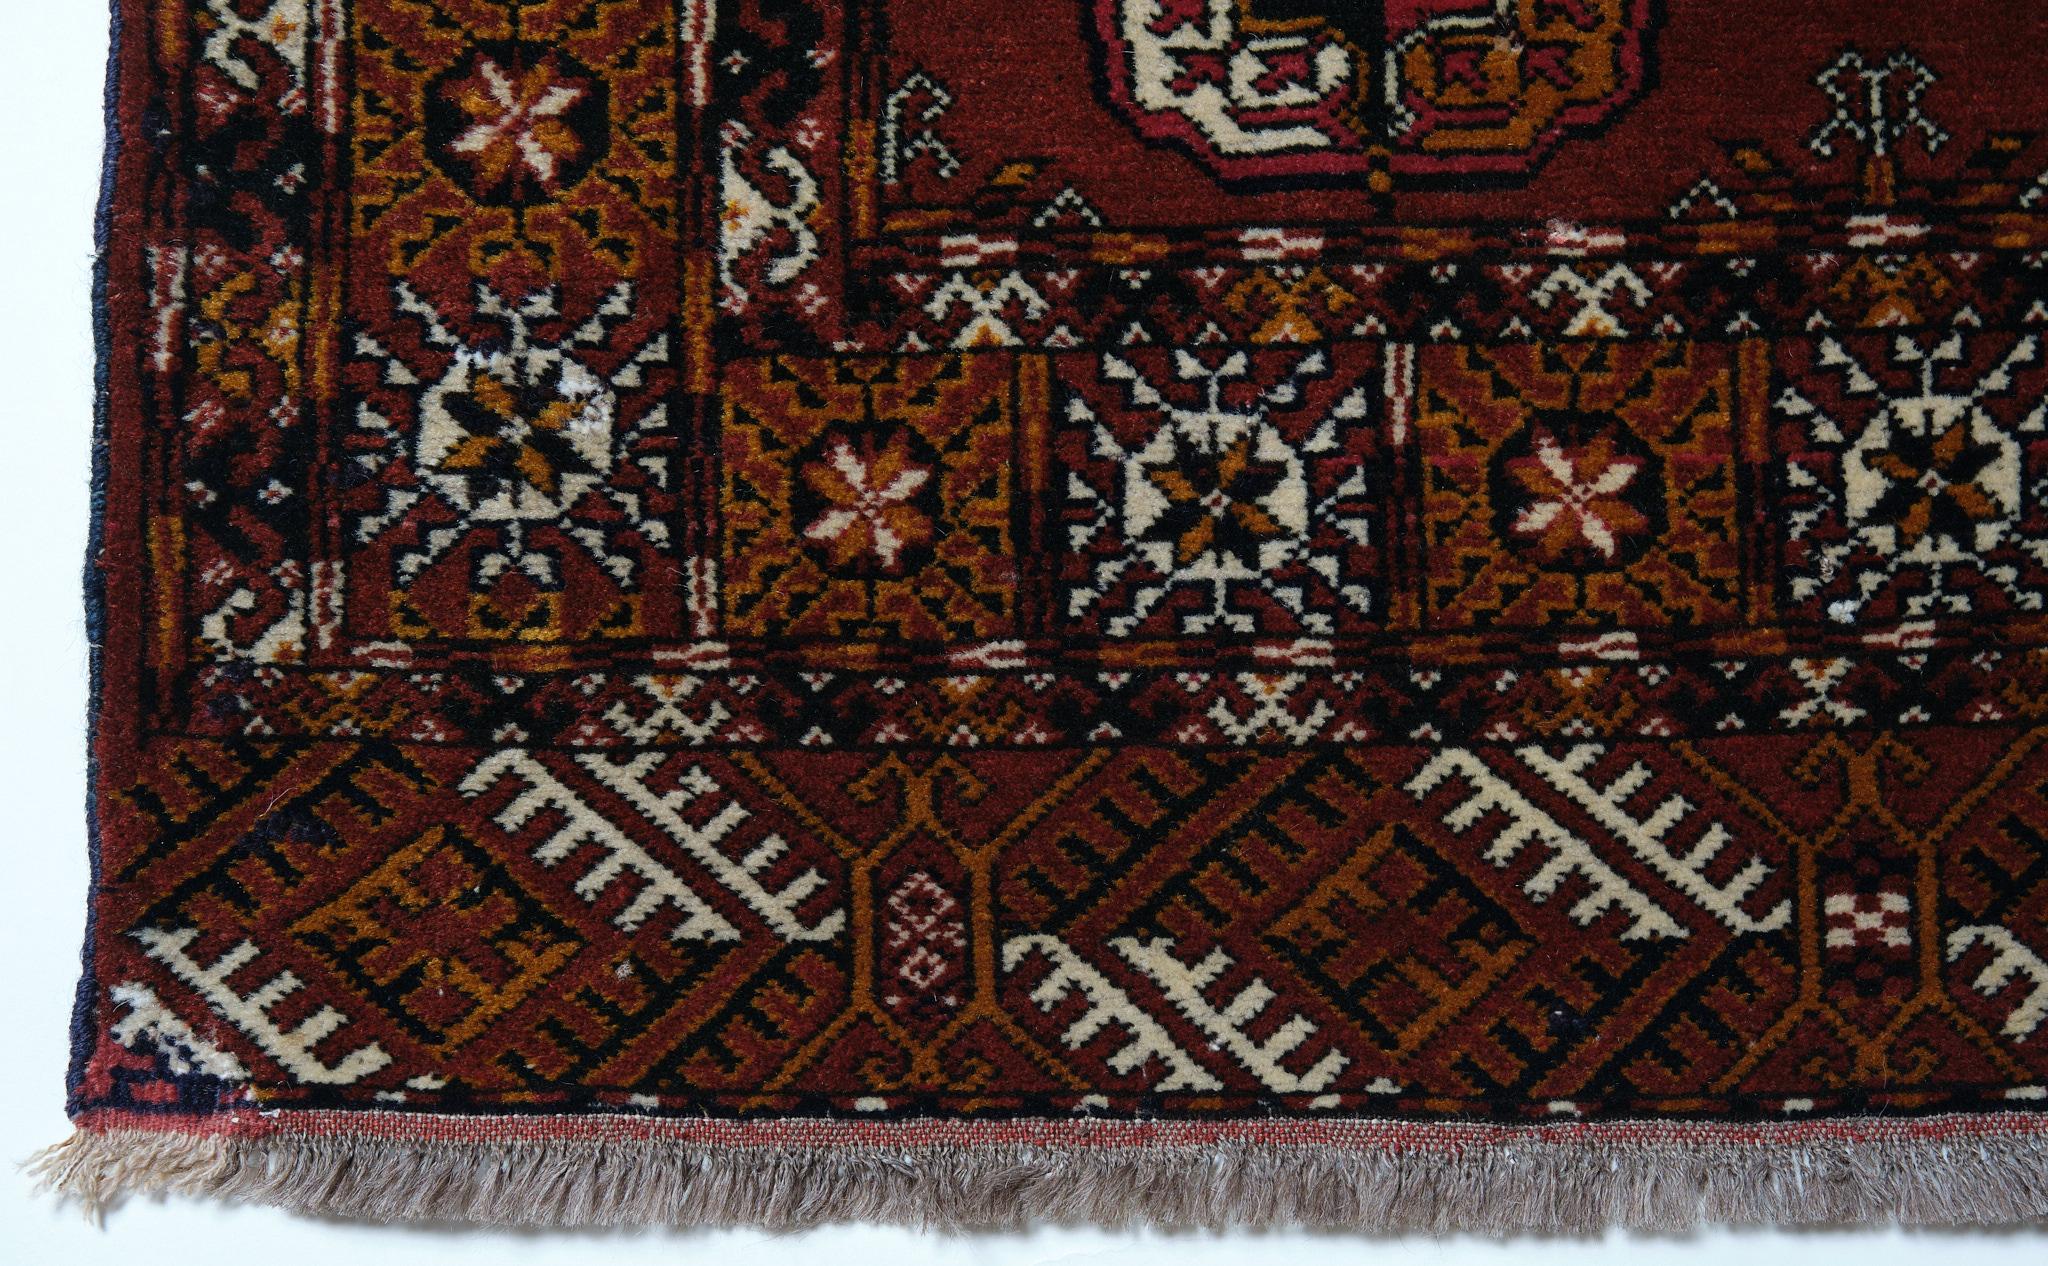 Dies ist ein zentralasiatischer Old Tekke Buchara Turkmen Teppich aus der Region Turkmenistan Buchara mit einer seltenen und schönen Farbkomposition.

Buchara-Teppich (Turkmen Rug, Bokhara, Buhara, Bukhara) ist der Name eines von den Turkmenen